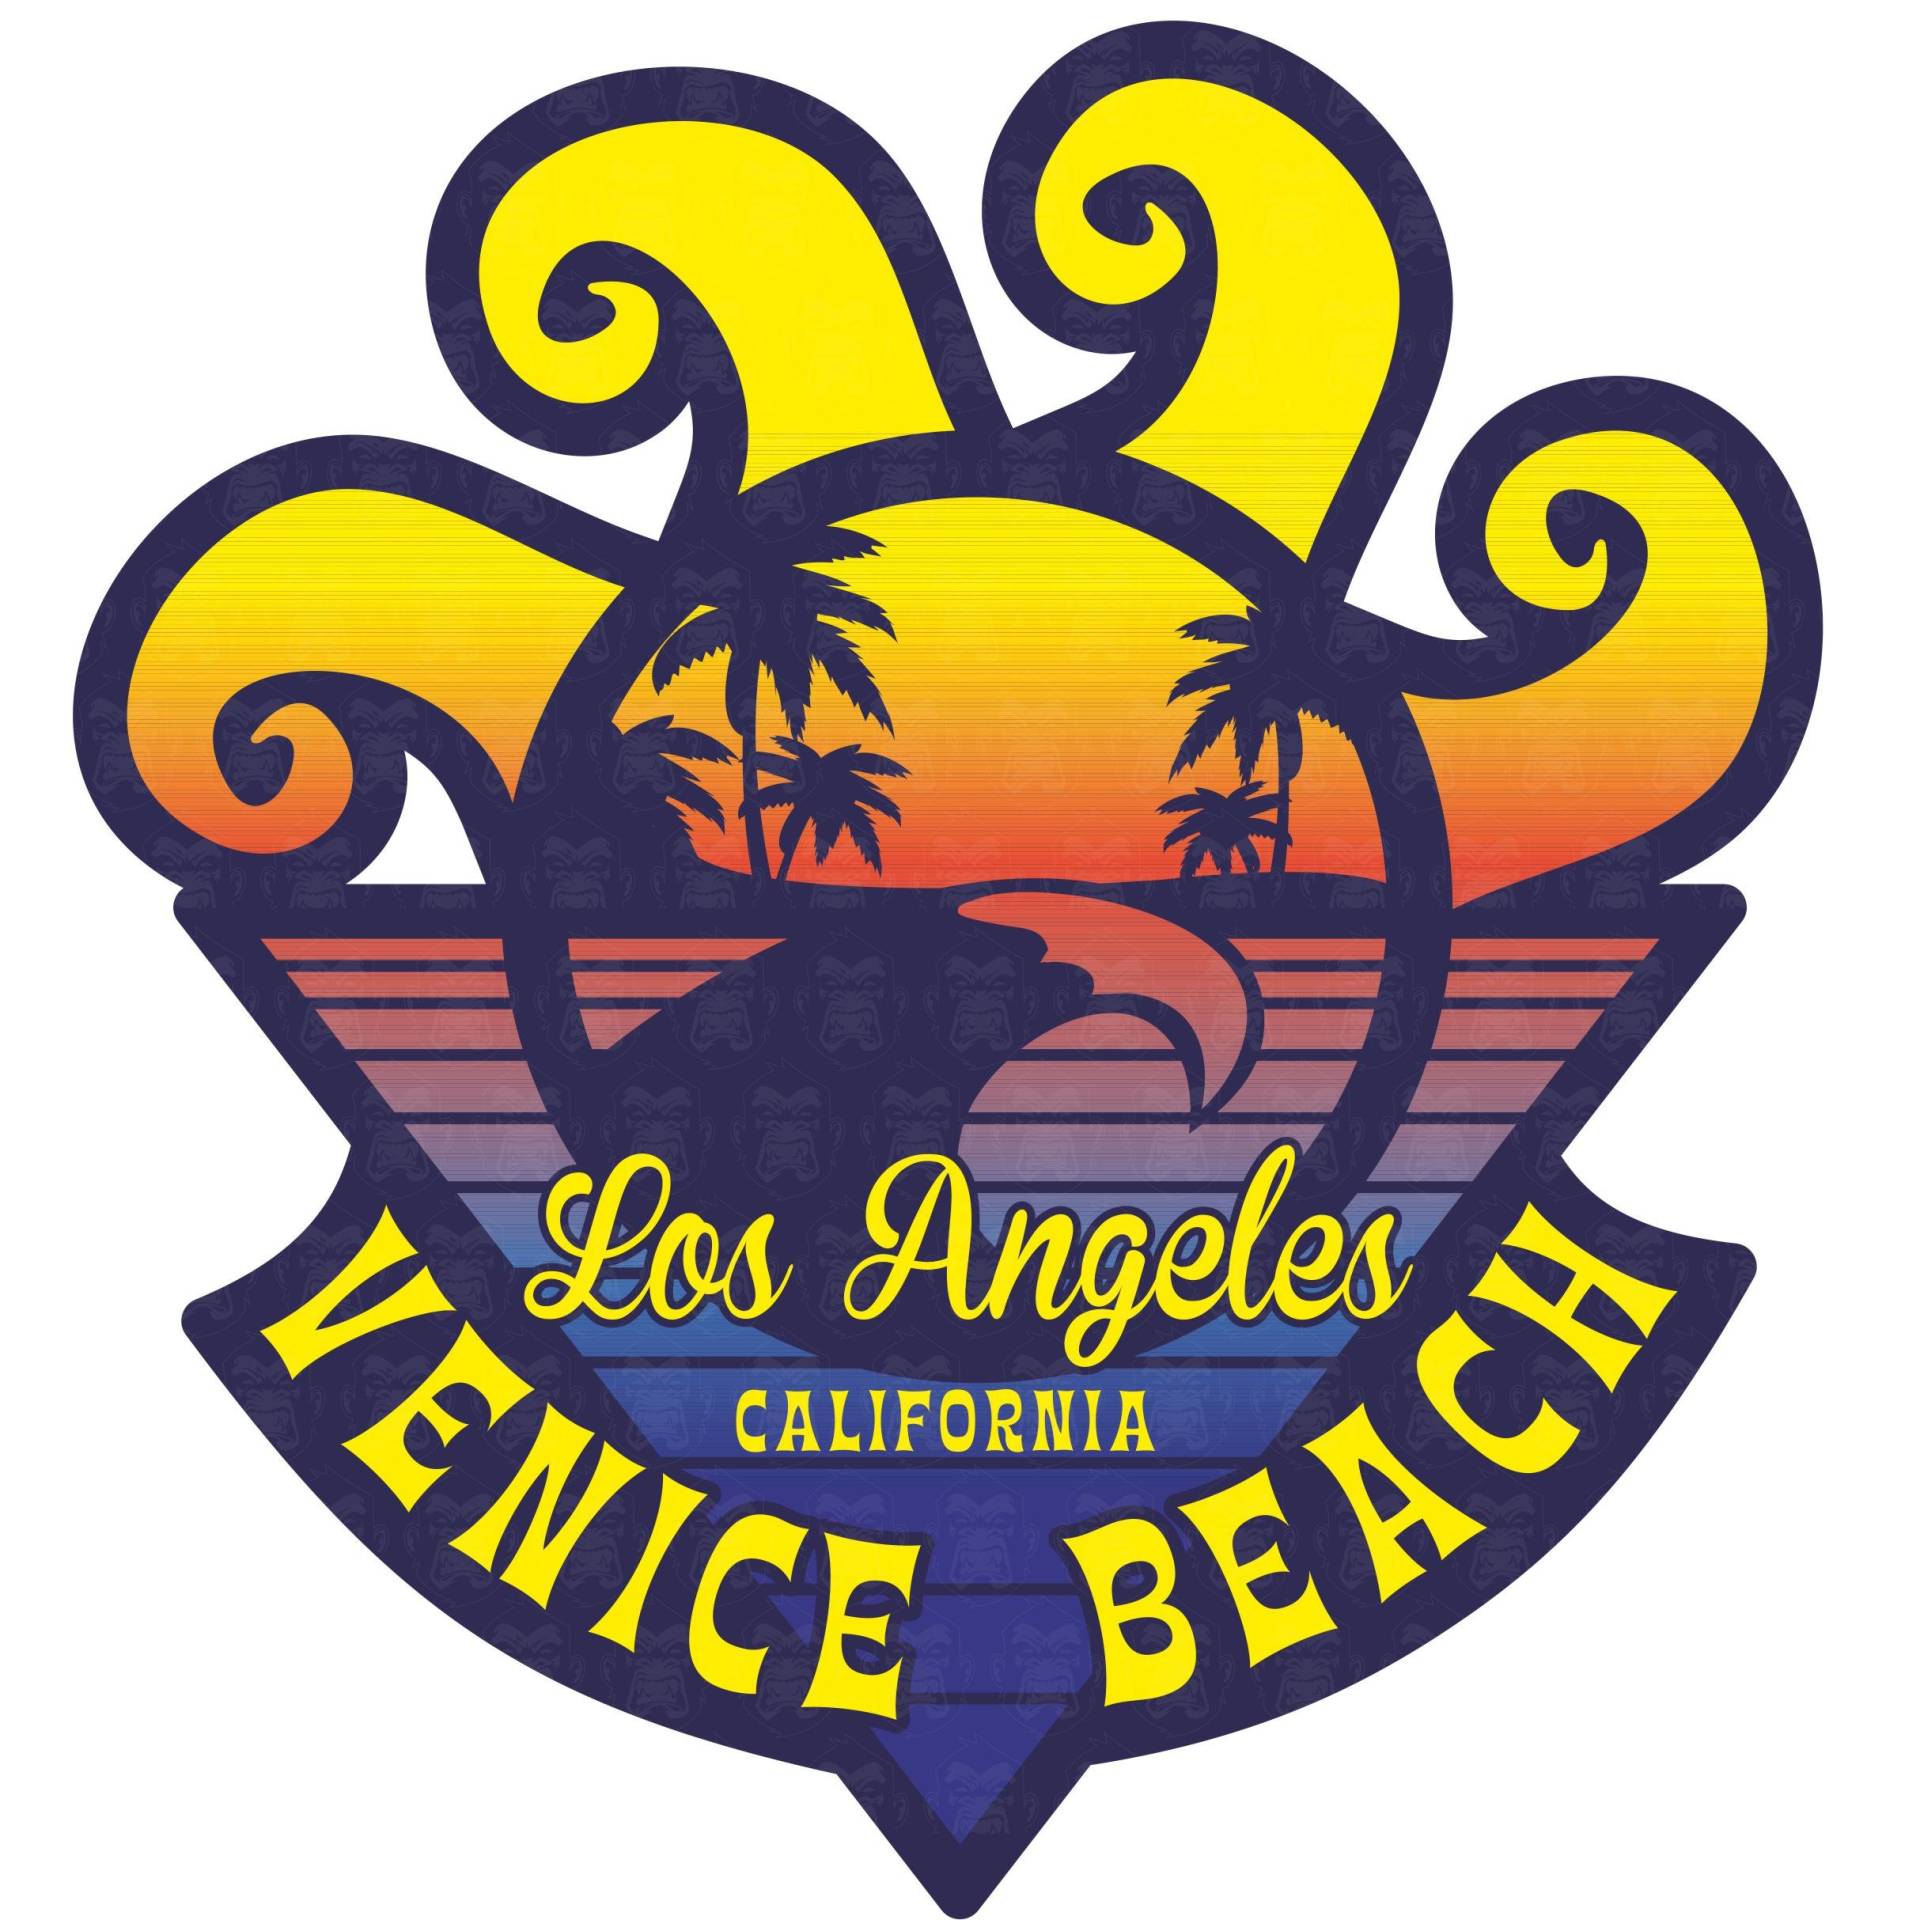 MG027 / Venice Beach Aufkleber ca. 7,5x8,5cm Surfer Strand Sonne Urlaub Hippie Rockabilly Old School Vintage Retro Style von cut-it folientechnik & design